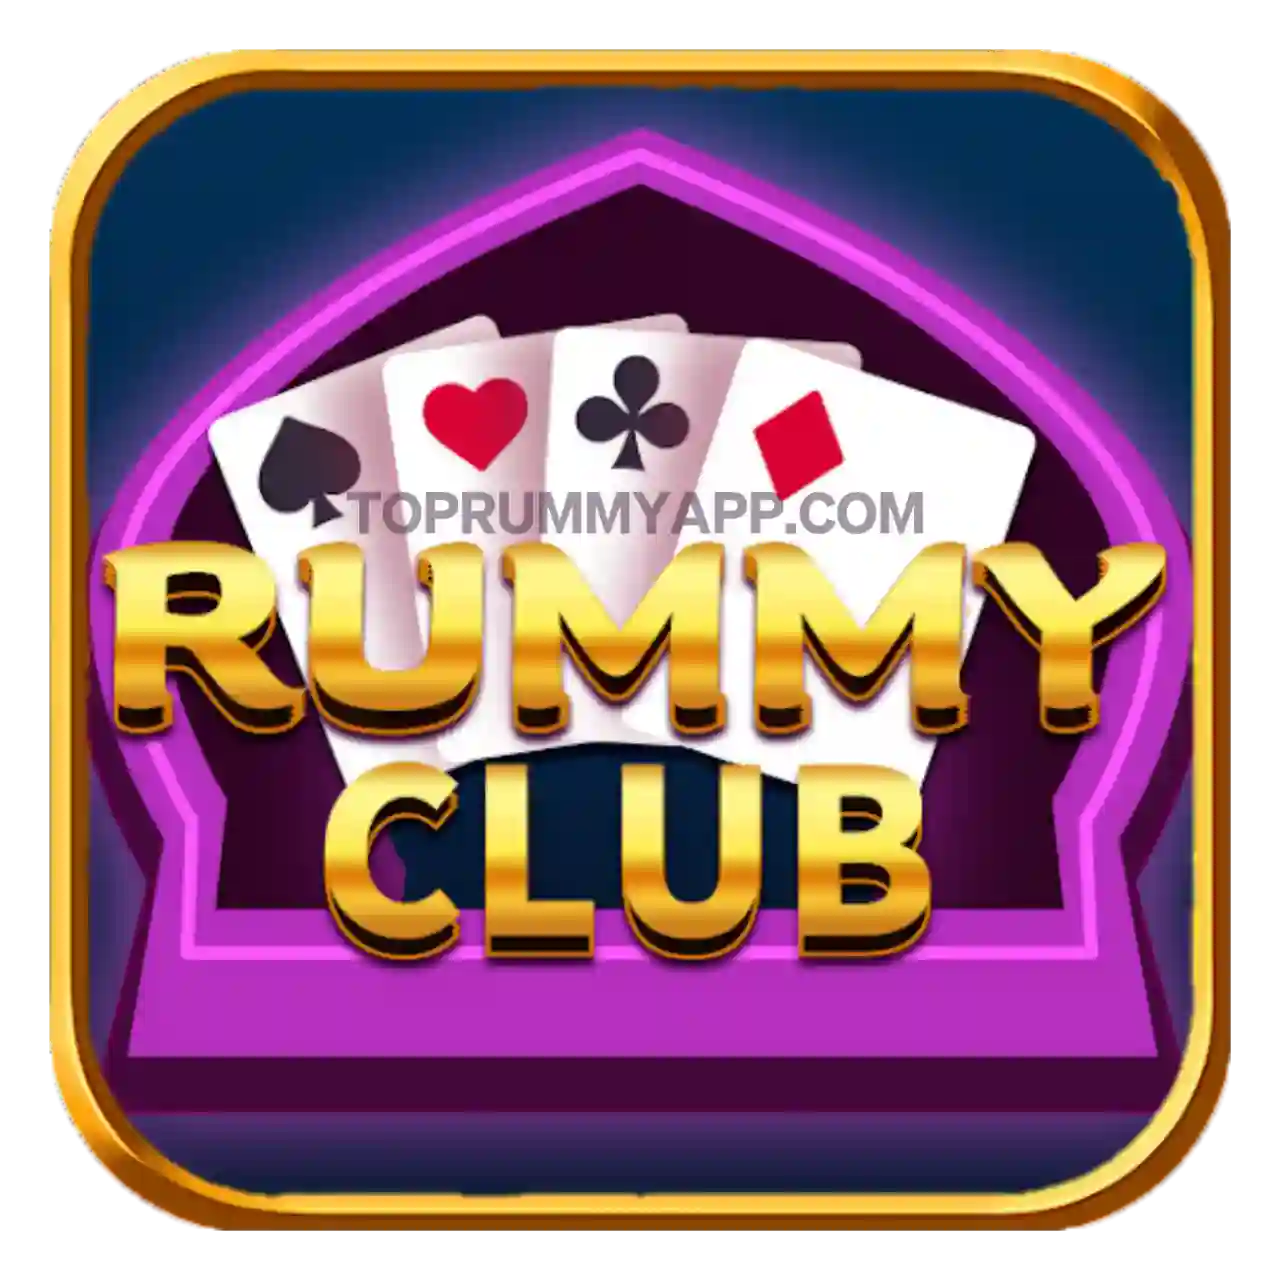 Rummy Club App Download All Rummy App List ₹41 Bonus